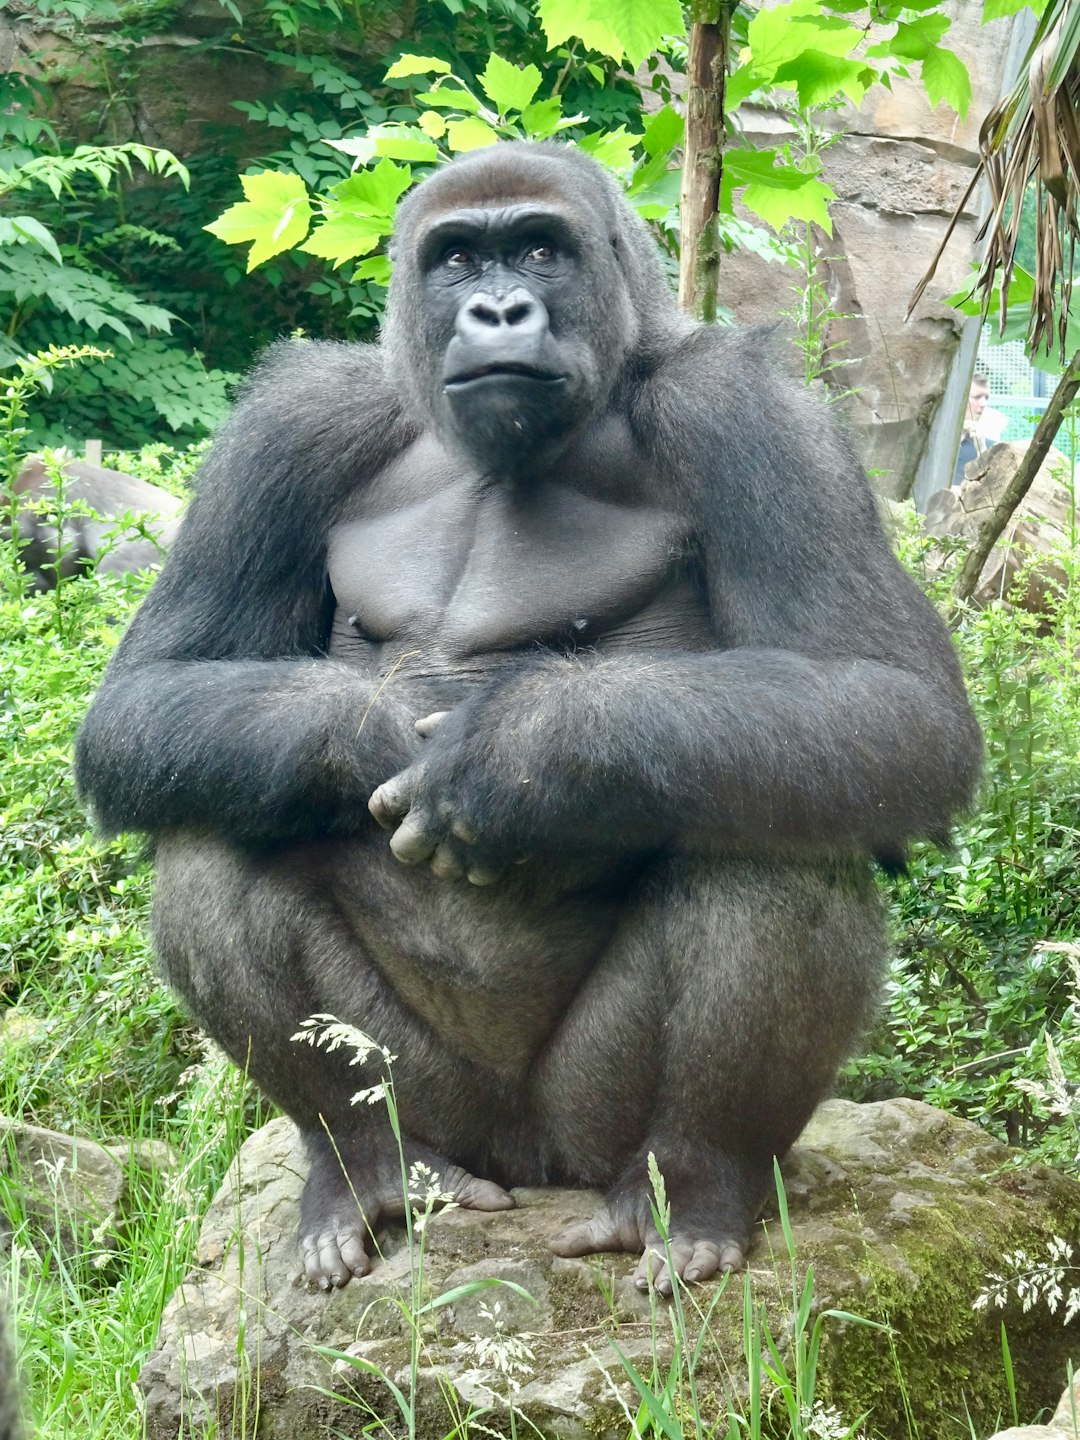  gorilla sitting on green grass during daytime gorilla